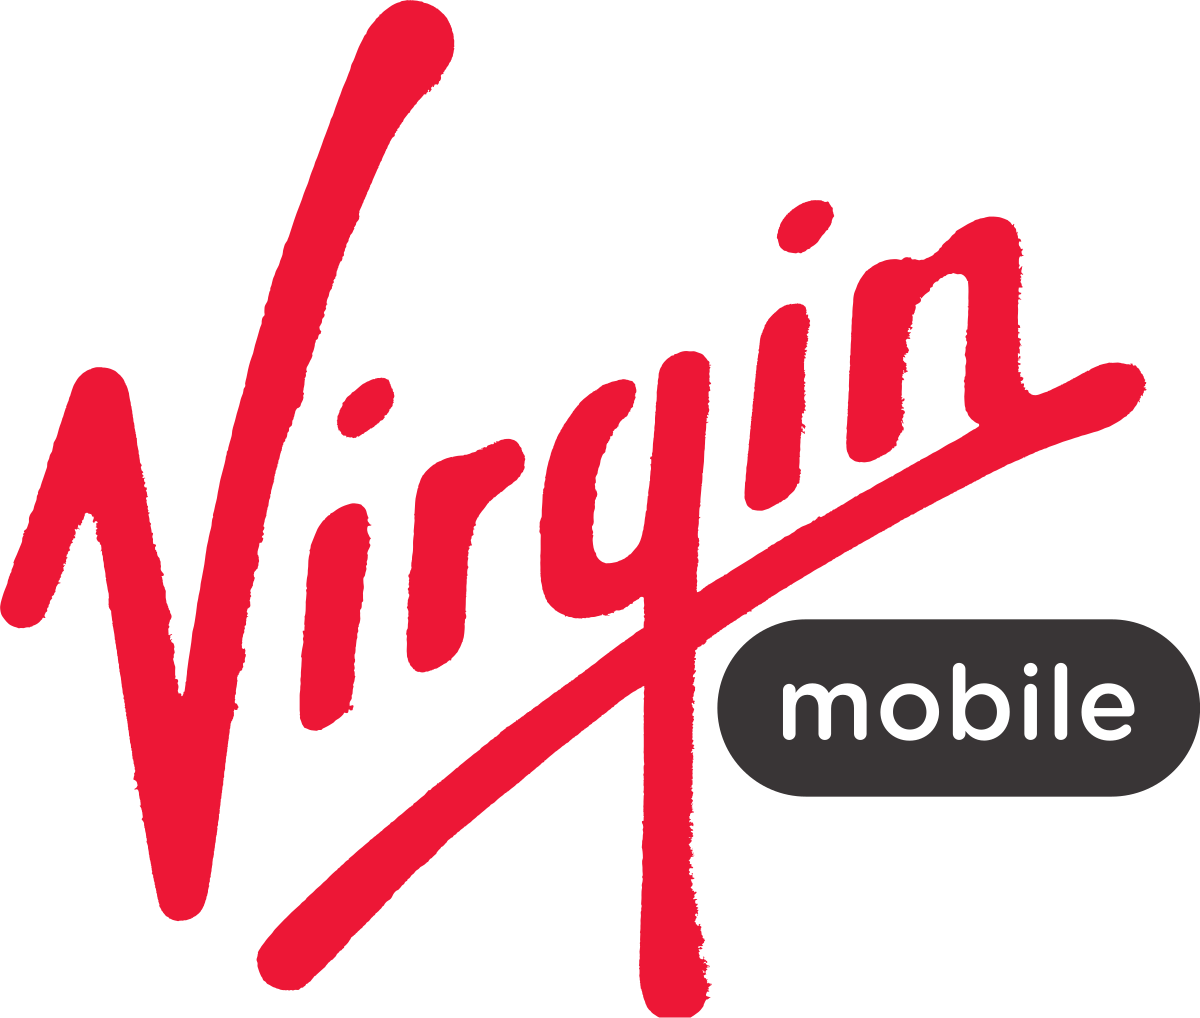 Virgin Wireless 18